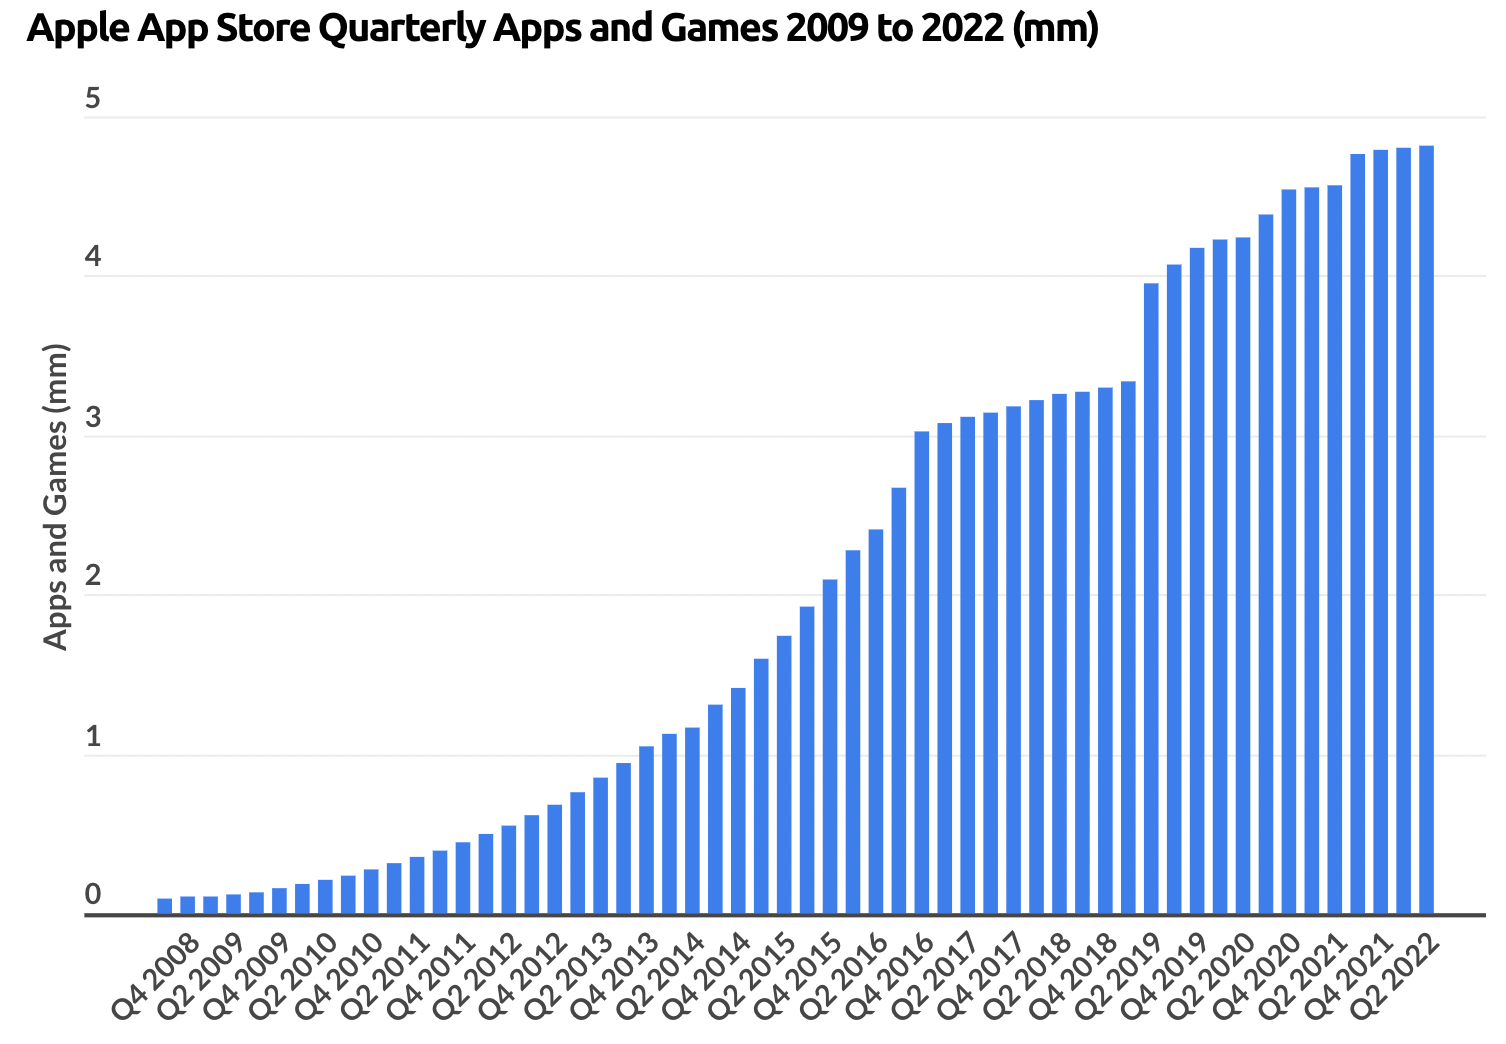 4.8 million unique applications on App Store